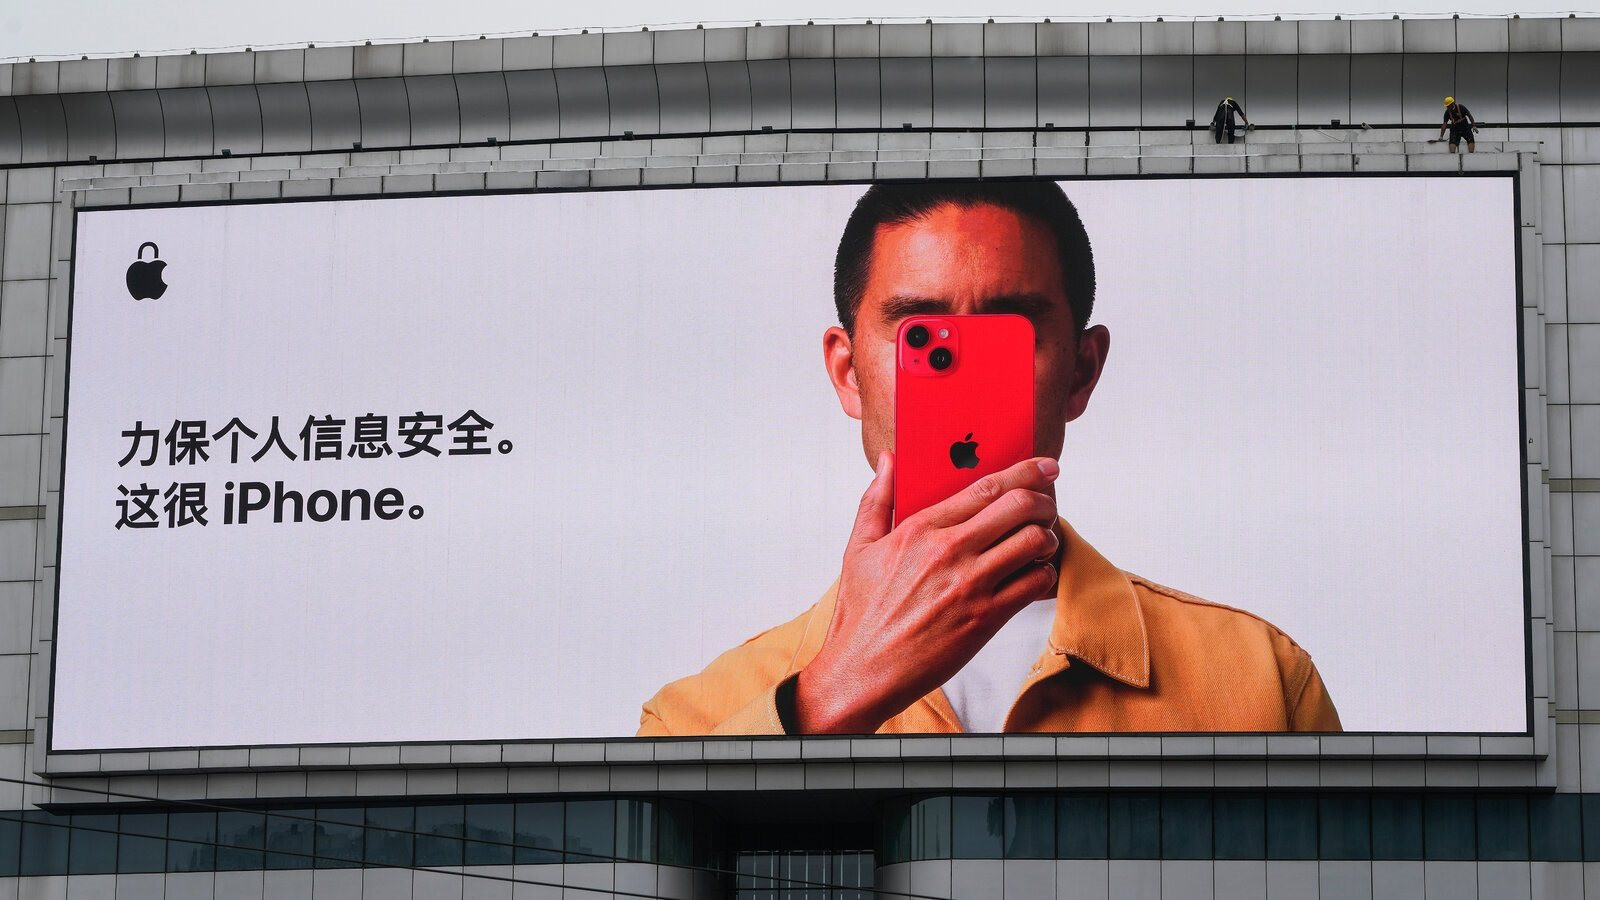 "3,5 tỷ USD của Apple sắp đến tay người dùng iPhone, sao lại trừ chúng ta?" - Người Trung Quốc than vãn- Ảnh 1.